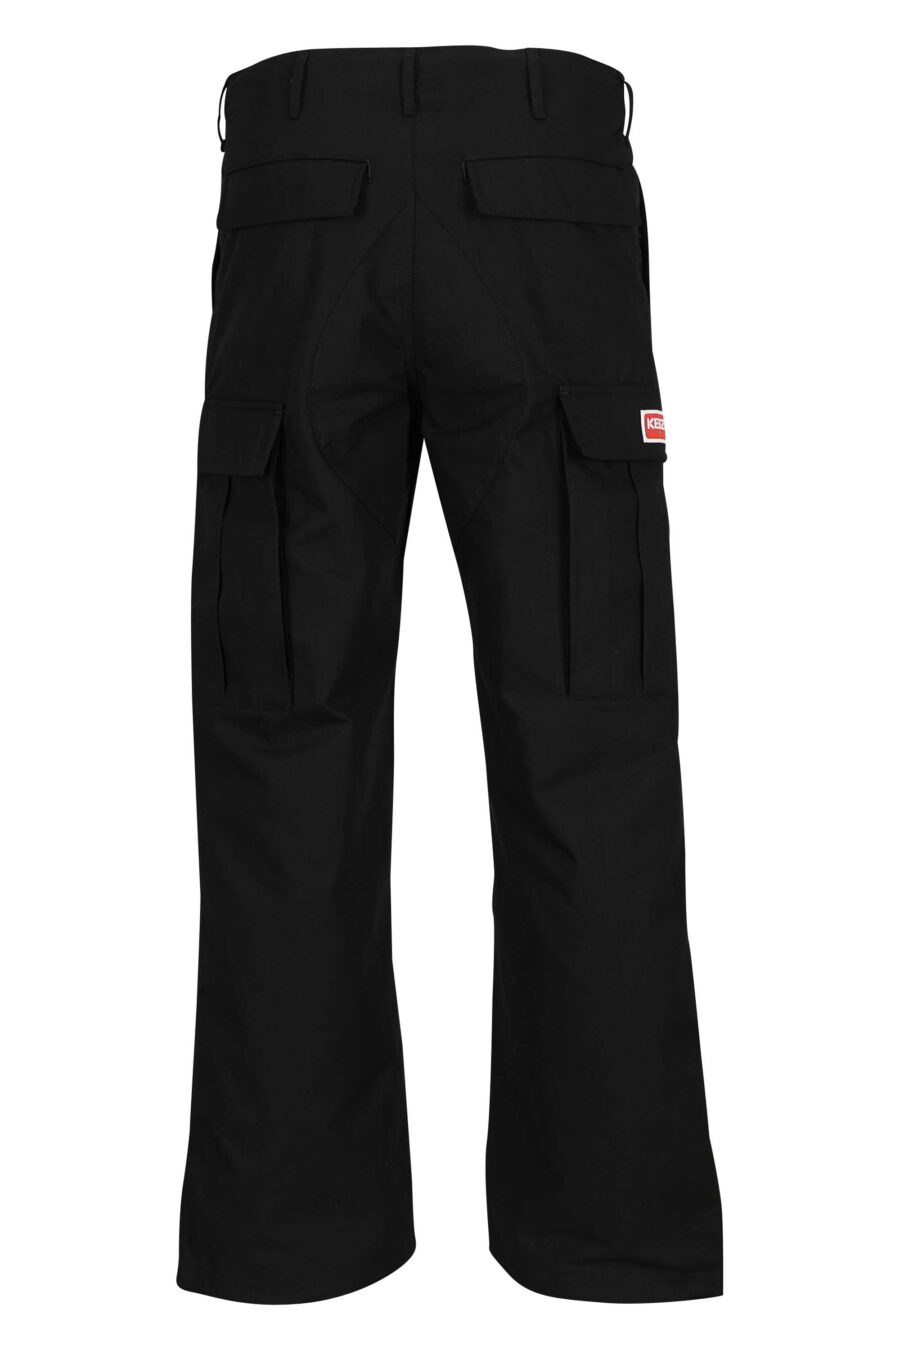 Pantalón negro estilo cargo con logo "boke flower" - 3612230618855 2